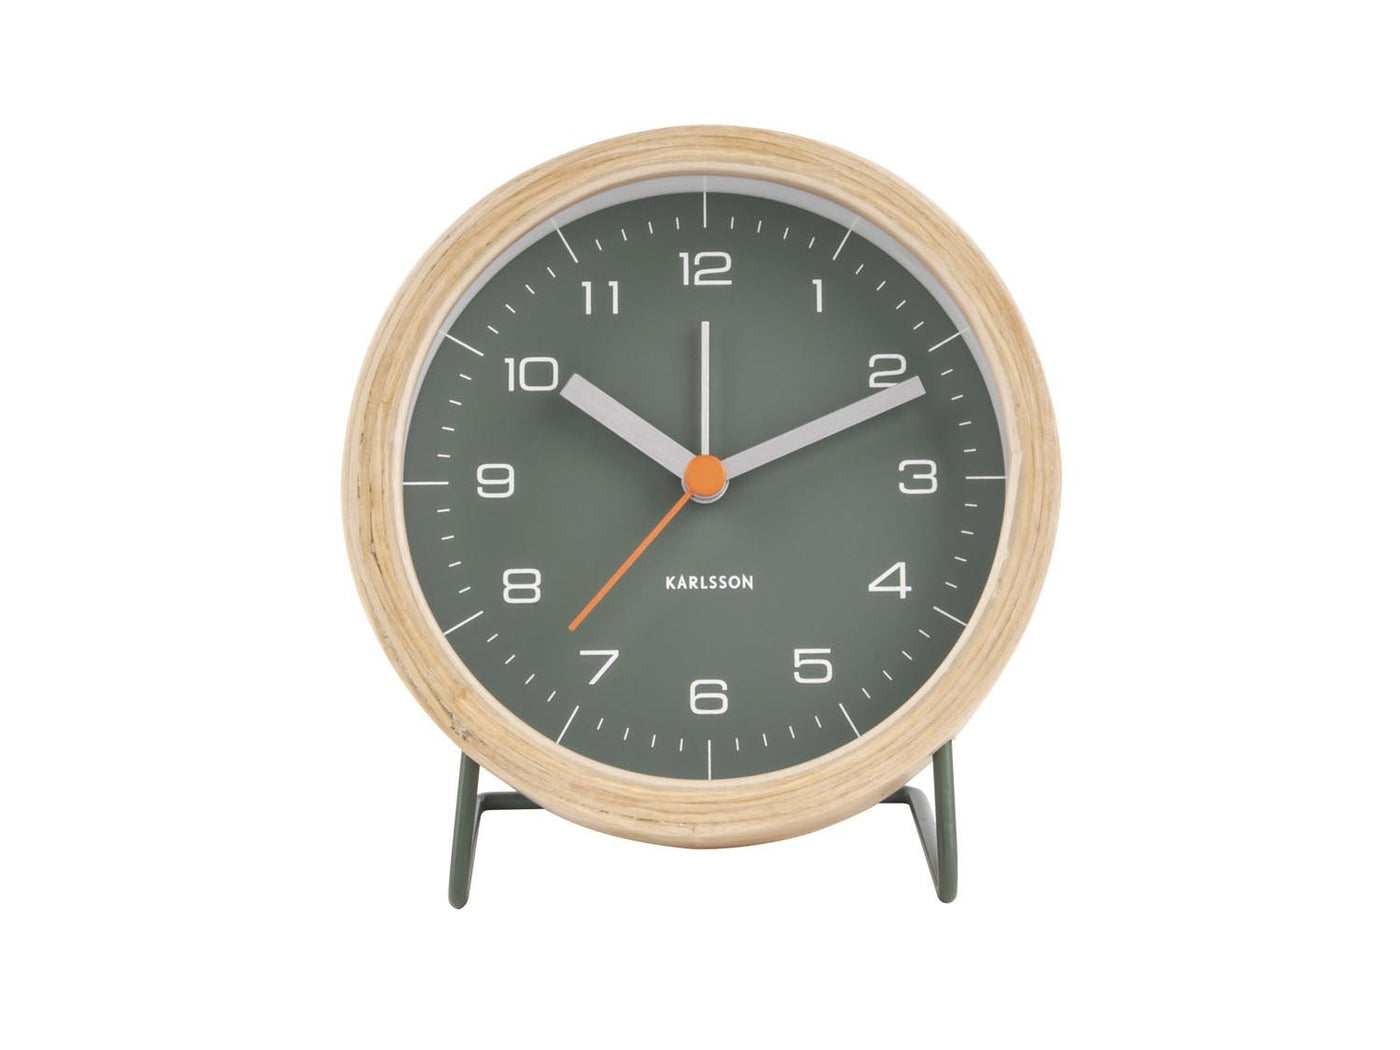 Karlsson Alarm Clock Innate Green Face Wood Case - timeframedclocks